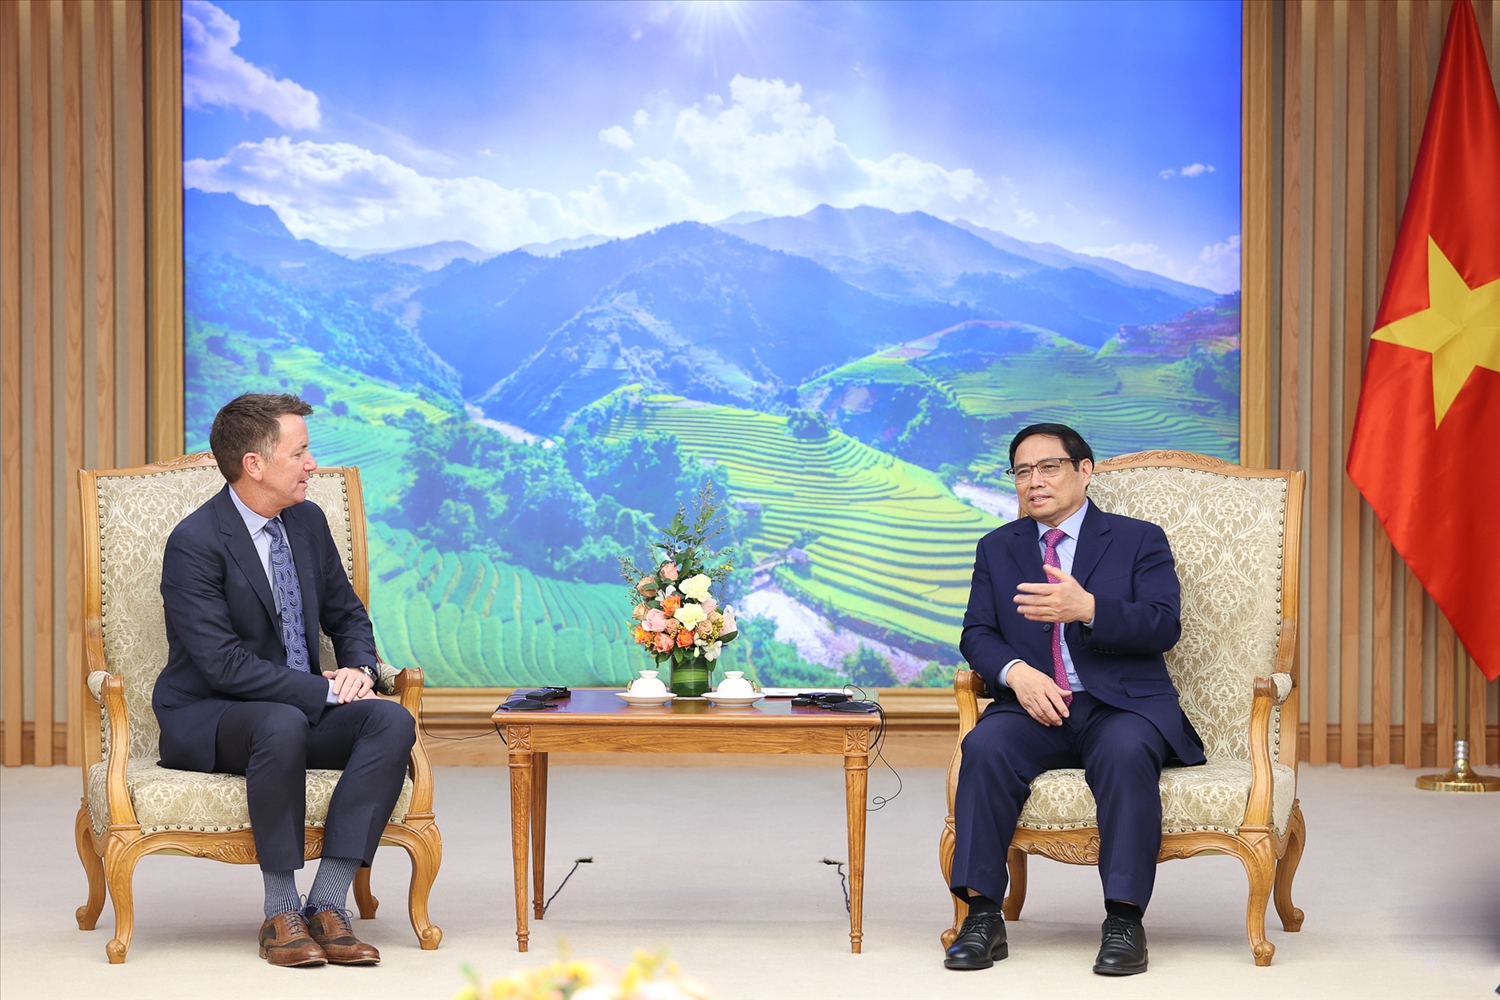 Thủ tướng Phạm Minh Chính tiếp ông Andy Campion, Giám đốc điều hành Tập đoàn Nike đang có chuyến thăm Việt Nam - Ảnh: VGP/Nhật Bắc